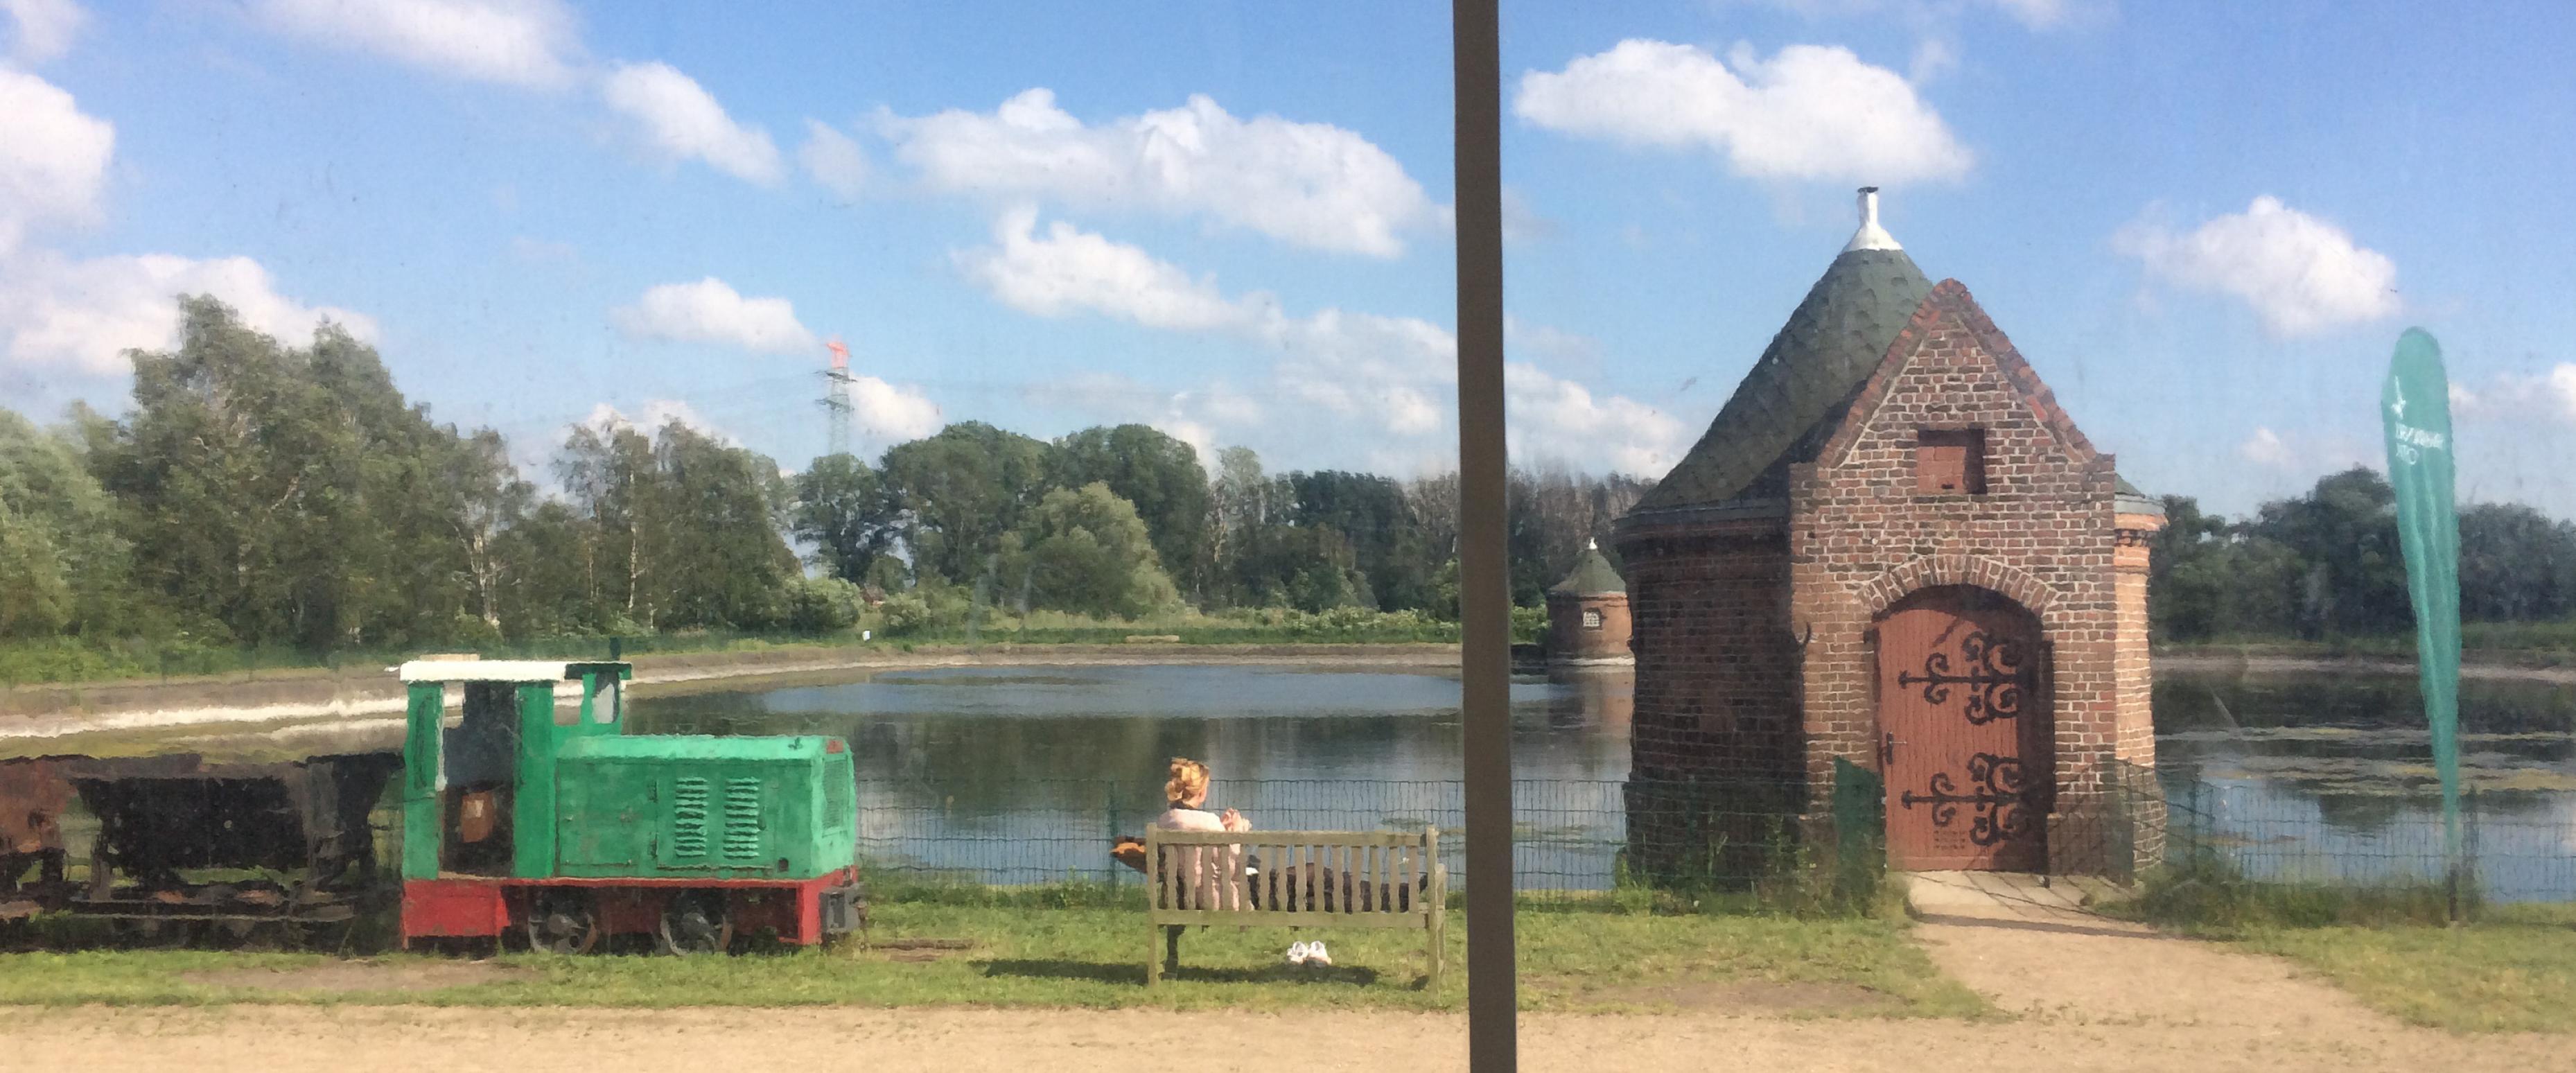 Blick über ein Wasserreservoir, davor ein Backsteinhäuschen und eine Grubenlokomotive. Ein Mensch sitzt auf einer Bank.